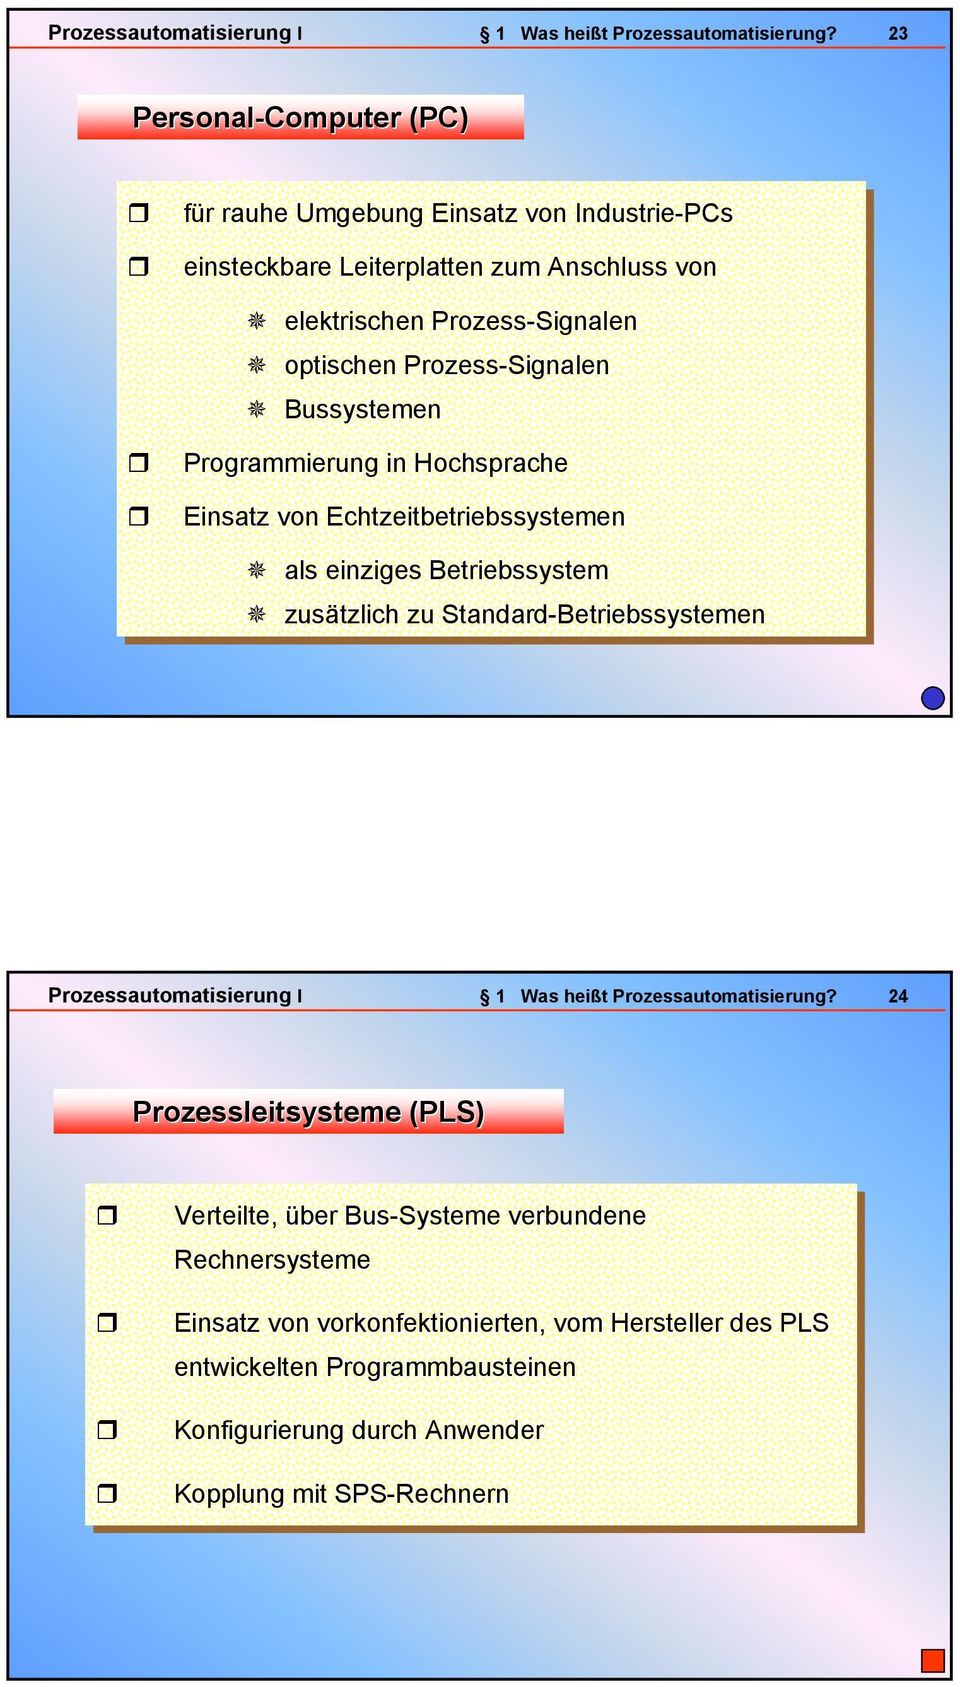 Prozess-Signalen Bussystemen Programmierung in in Hochsprache Einsatz von von Echtzeitbetriebssystemen als als einziges Betriebssystem zusätzlich zu zu Standard-Betriebssystemen 